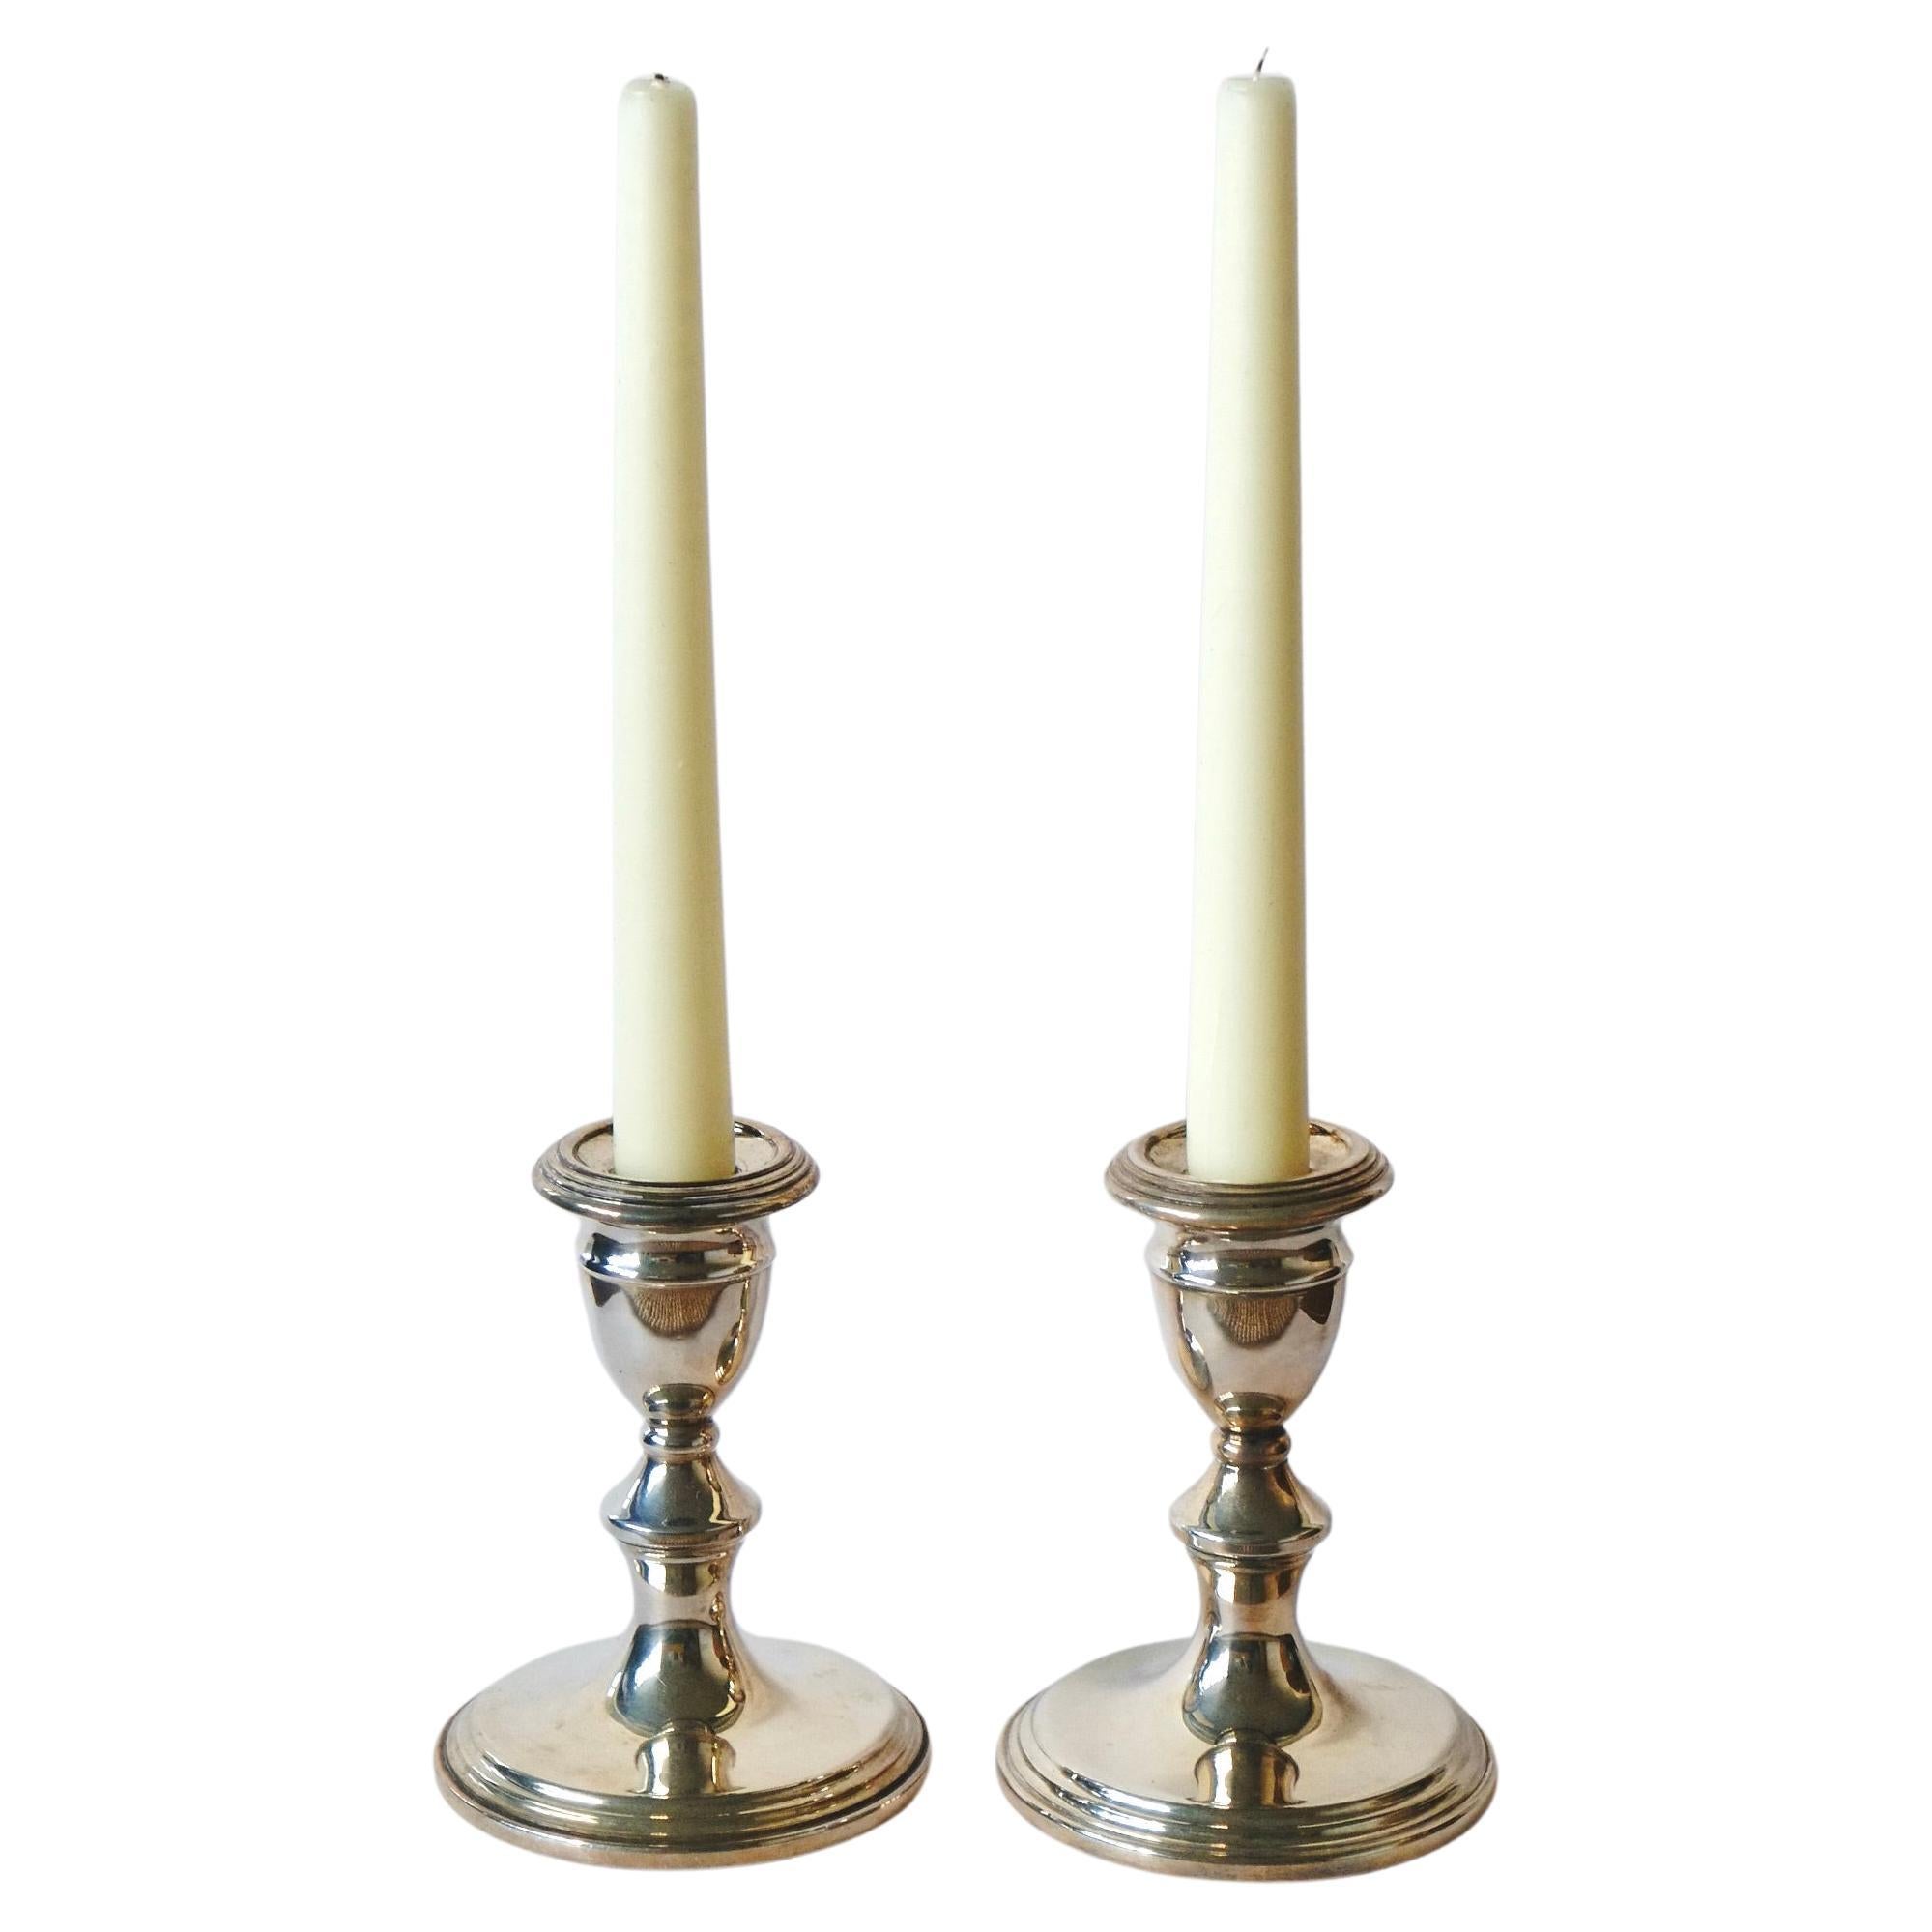 Ein Paar antike Kerzenhalter aus Silber auf Kupfer, hergestellt in England